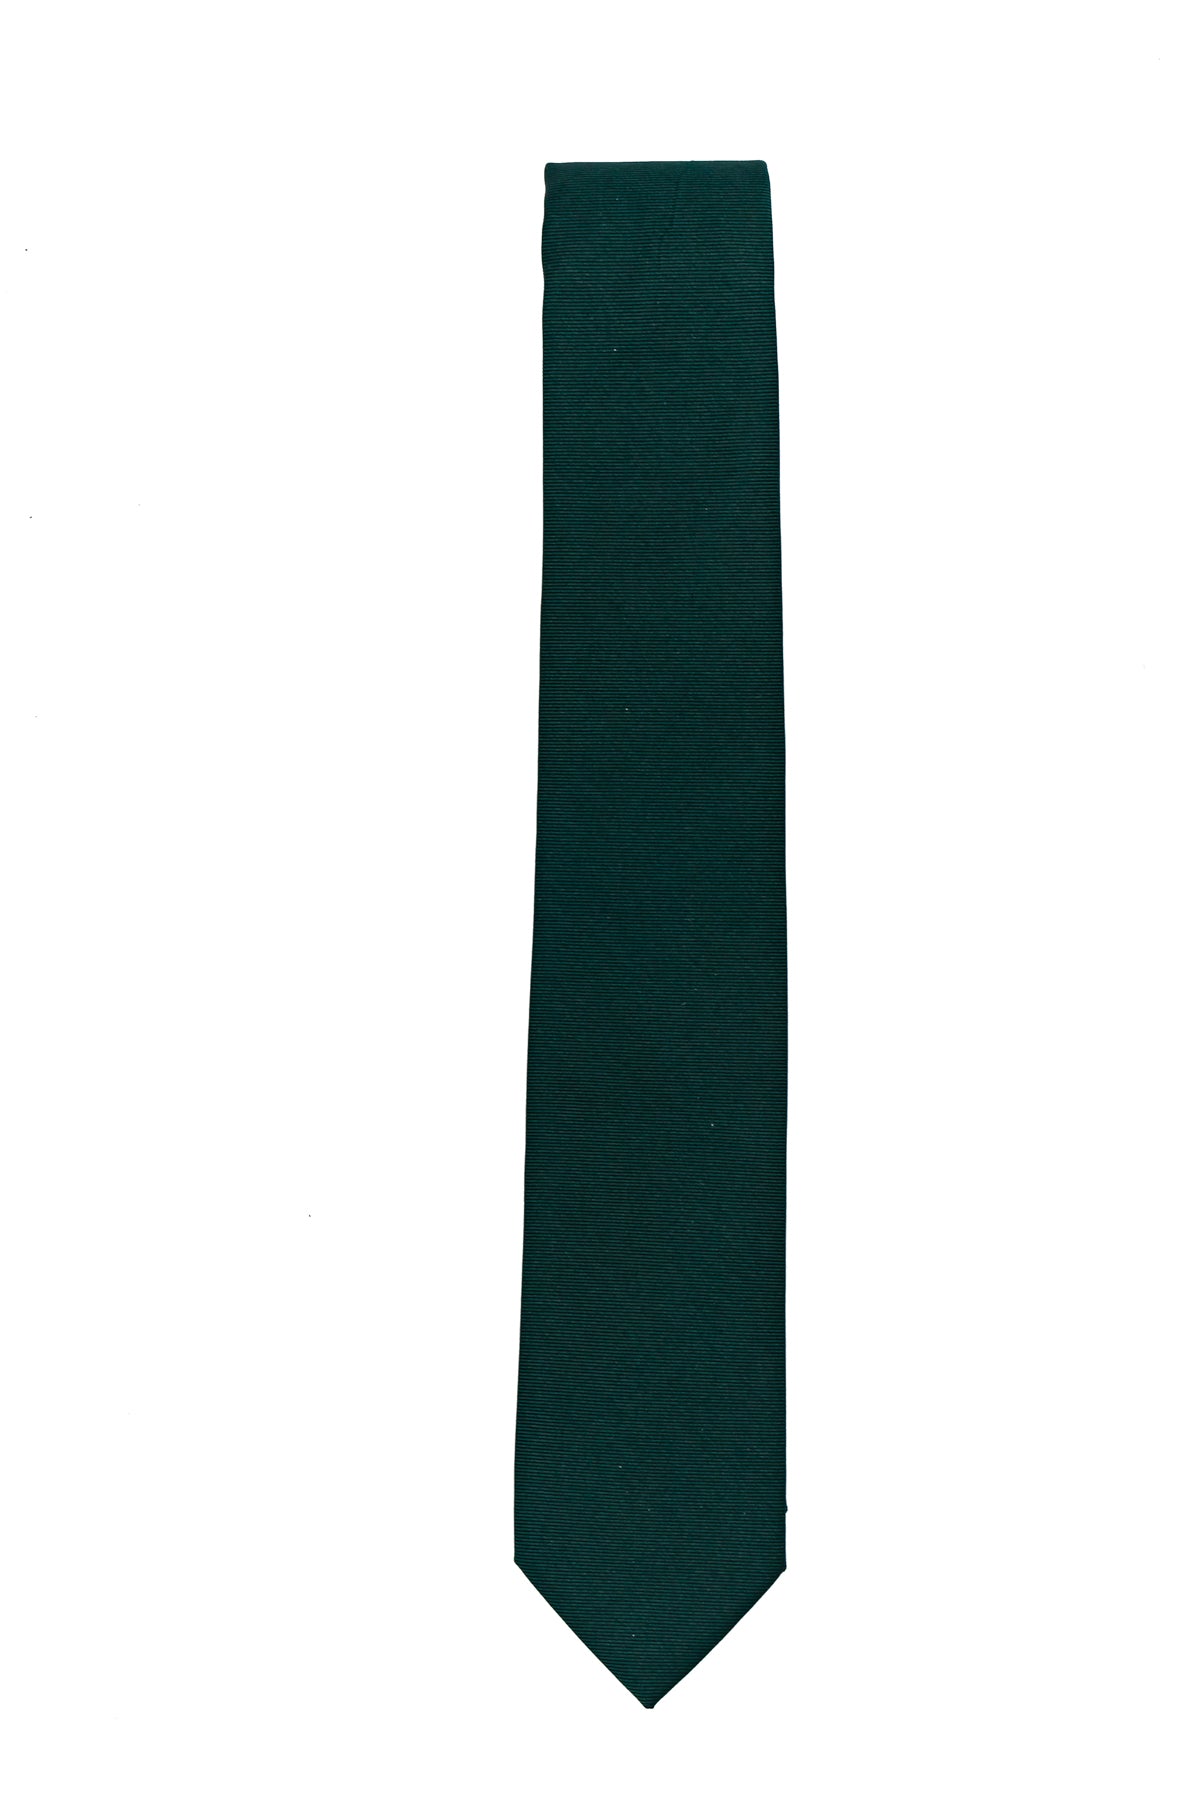 Franco Bassi Cravatta Twill Oriz Verde Scuro Uomo-1